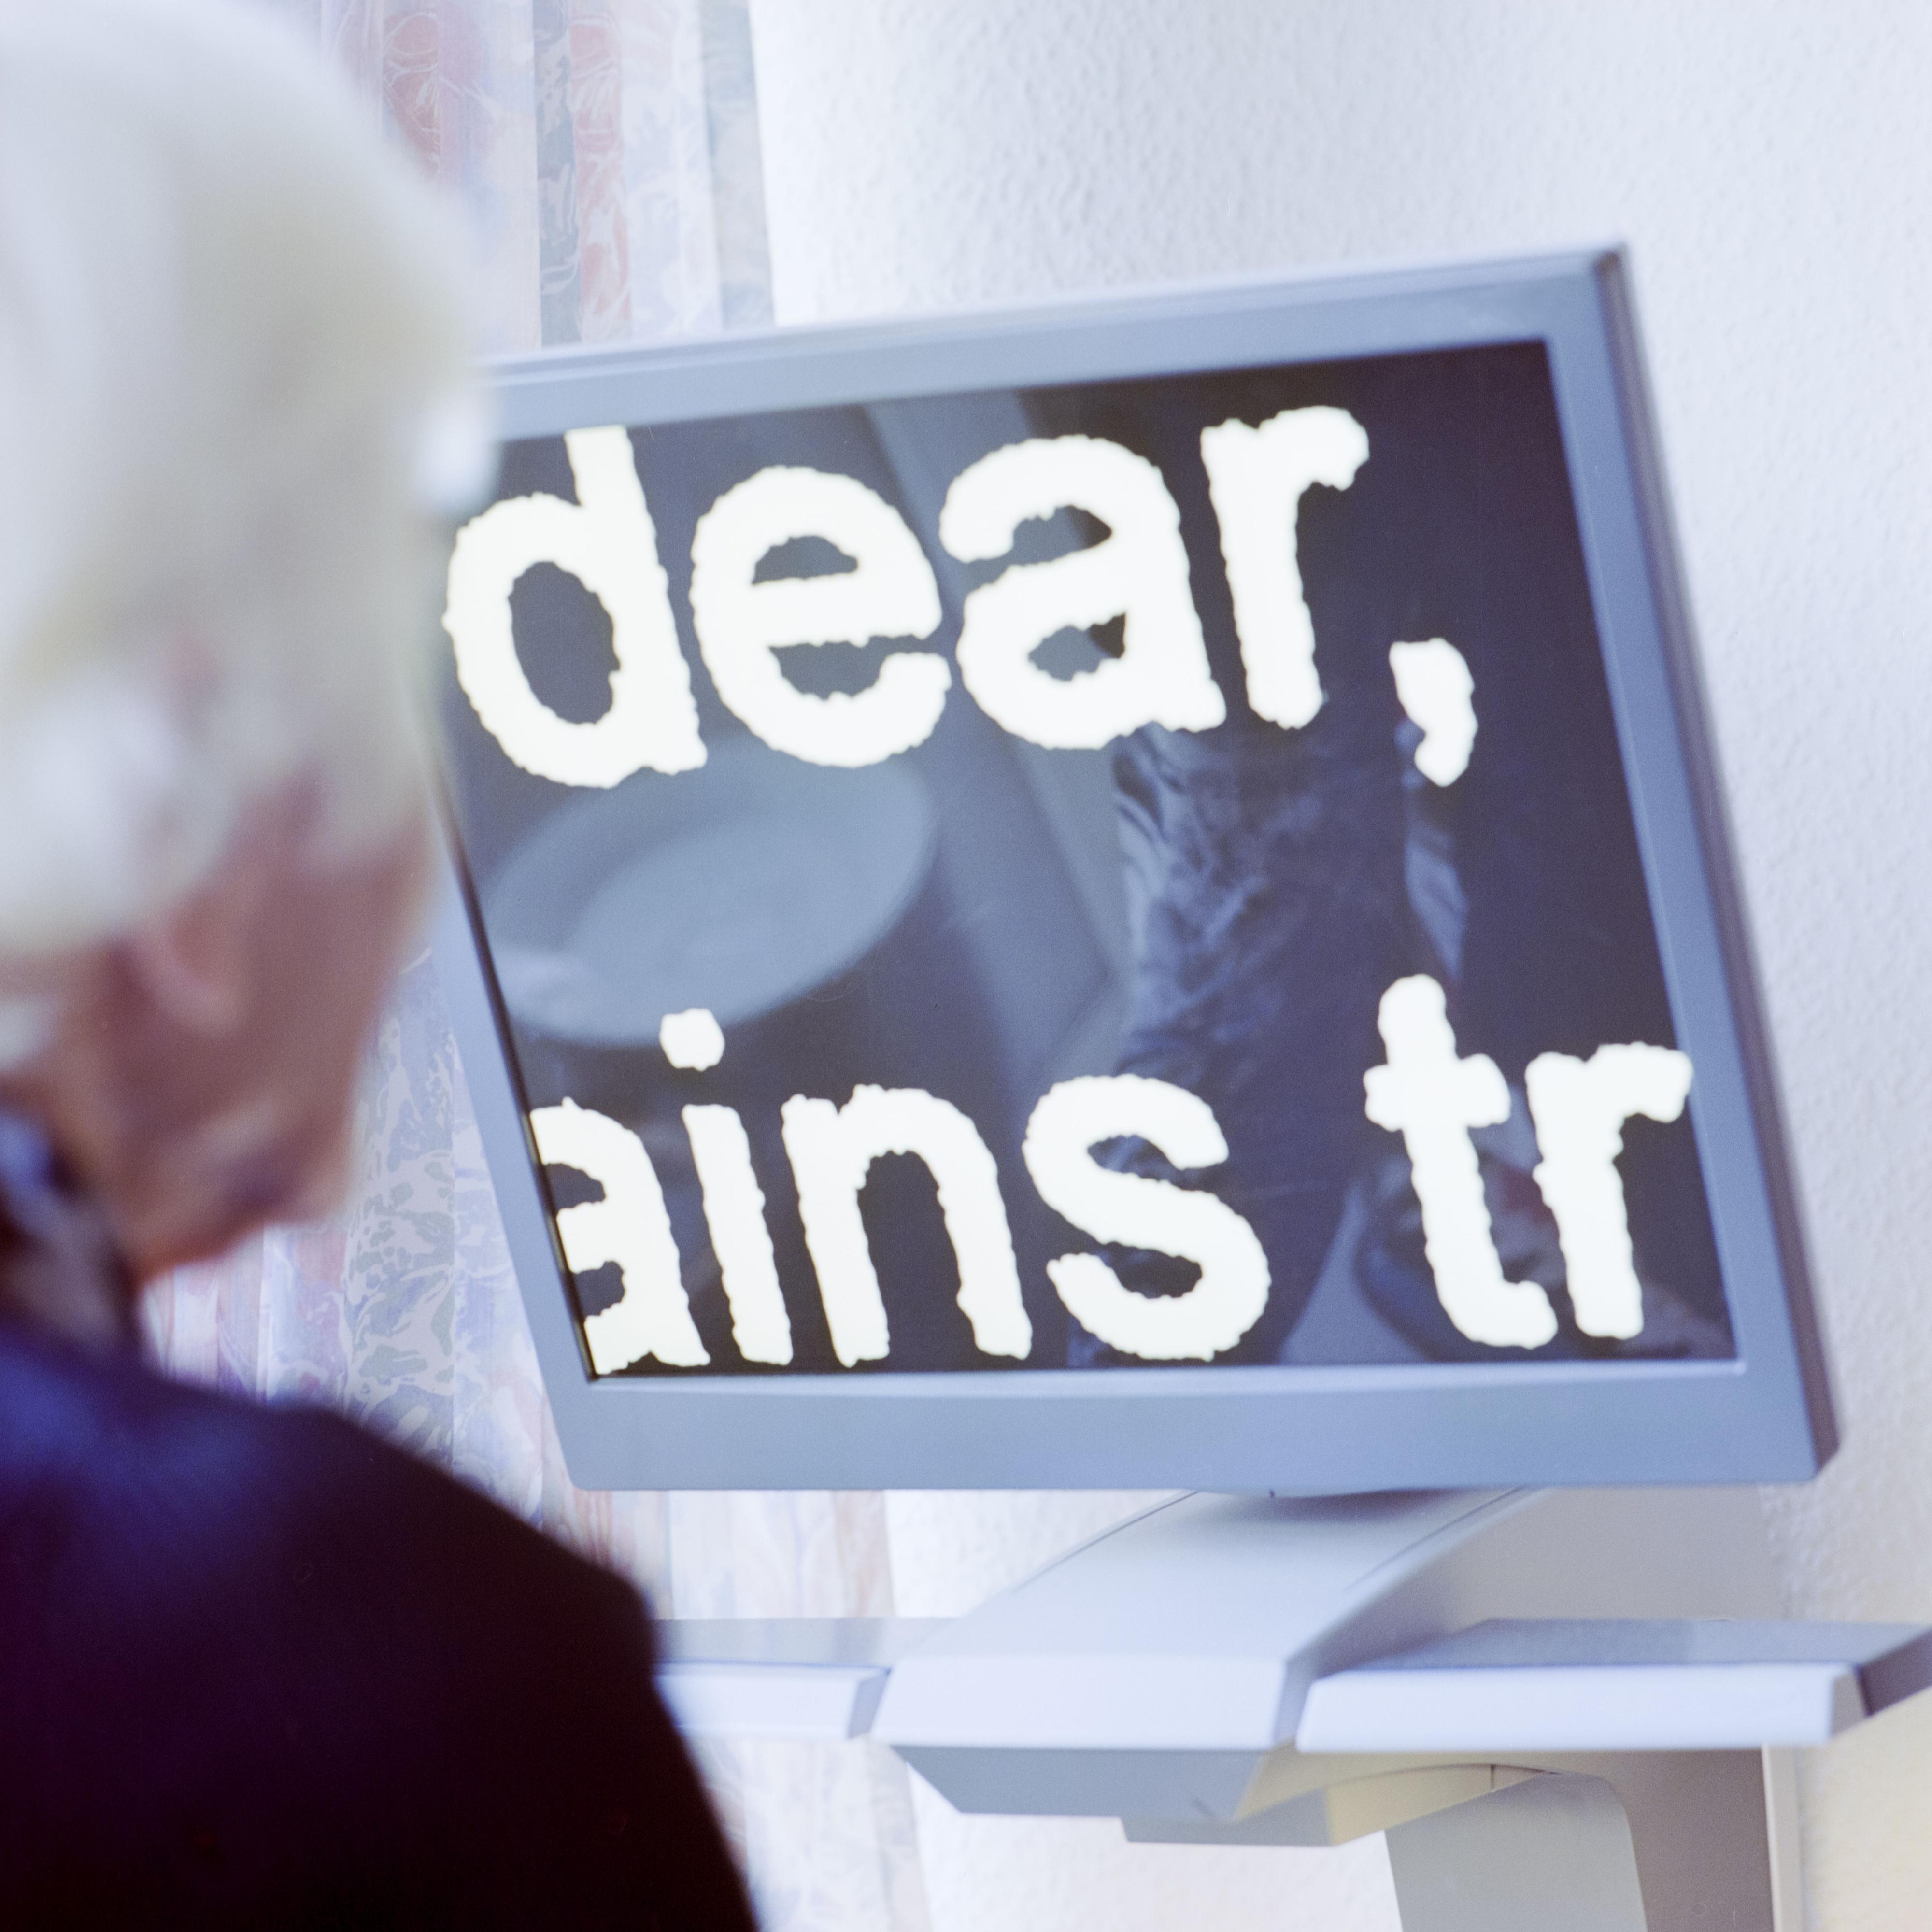 Ein Monitor, auf dem die Worte "dear", "ains" und "tr" zu sehen sind.